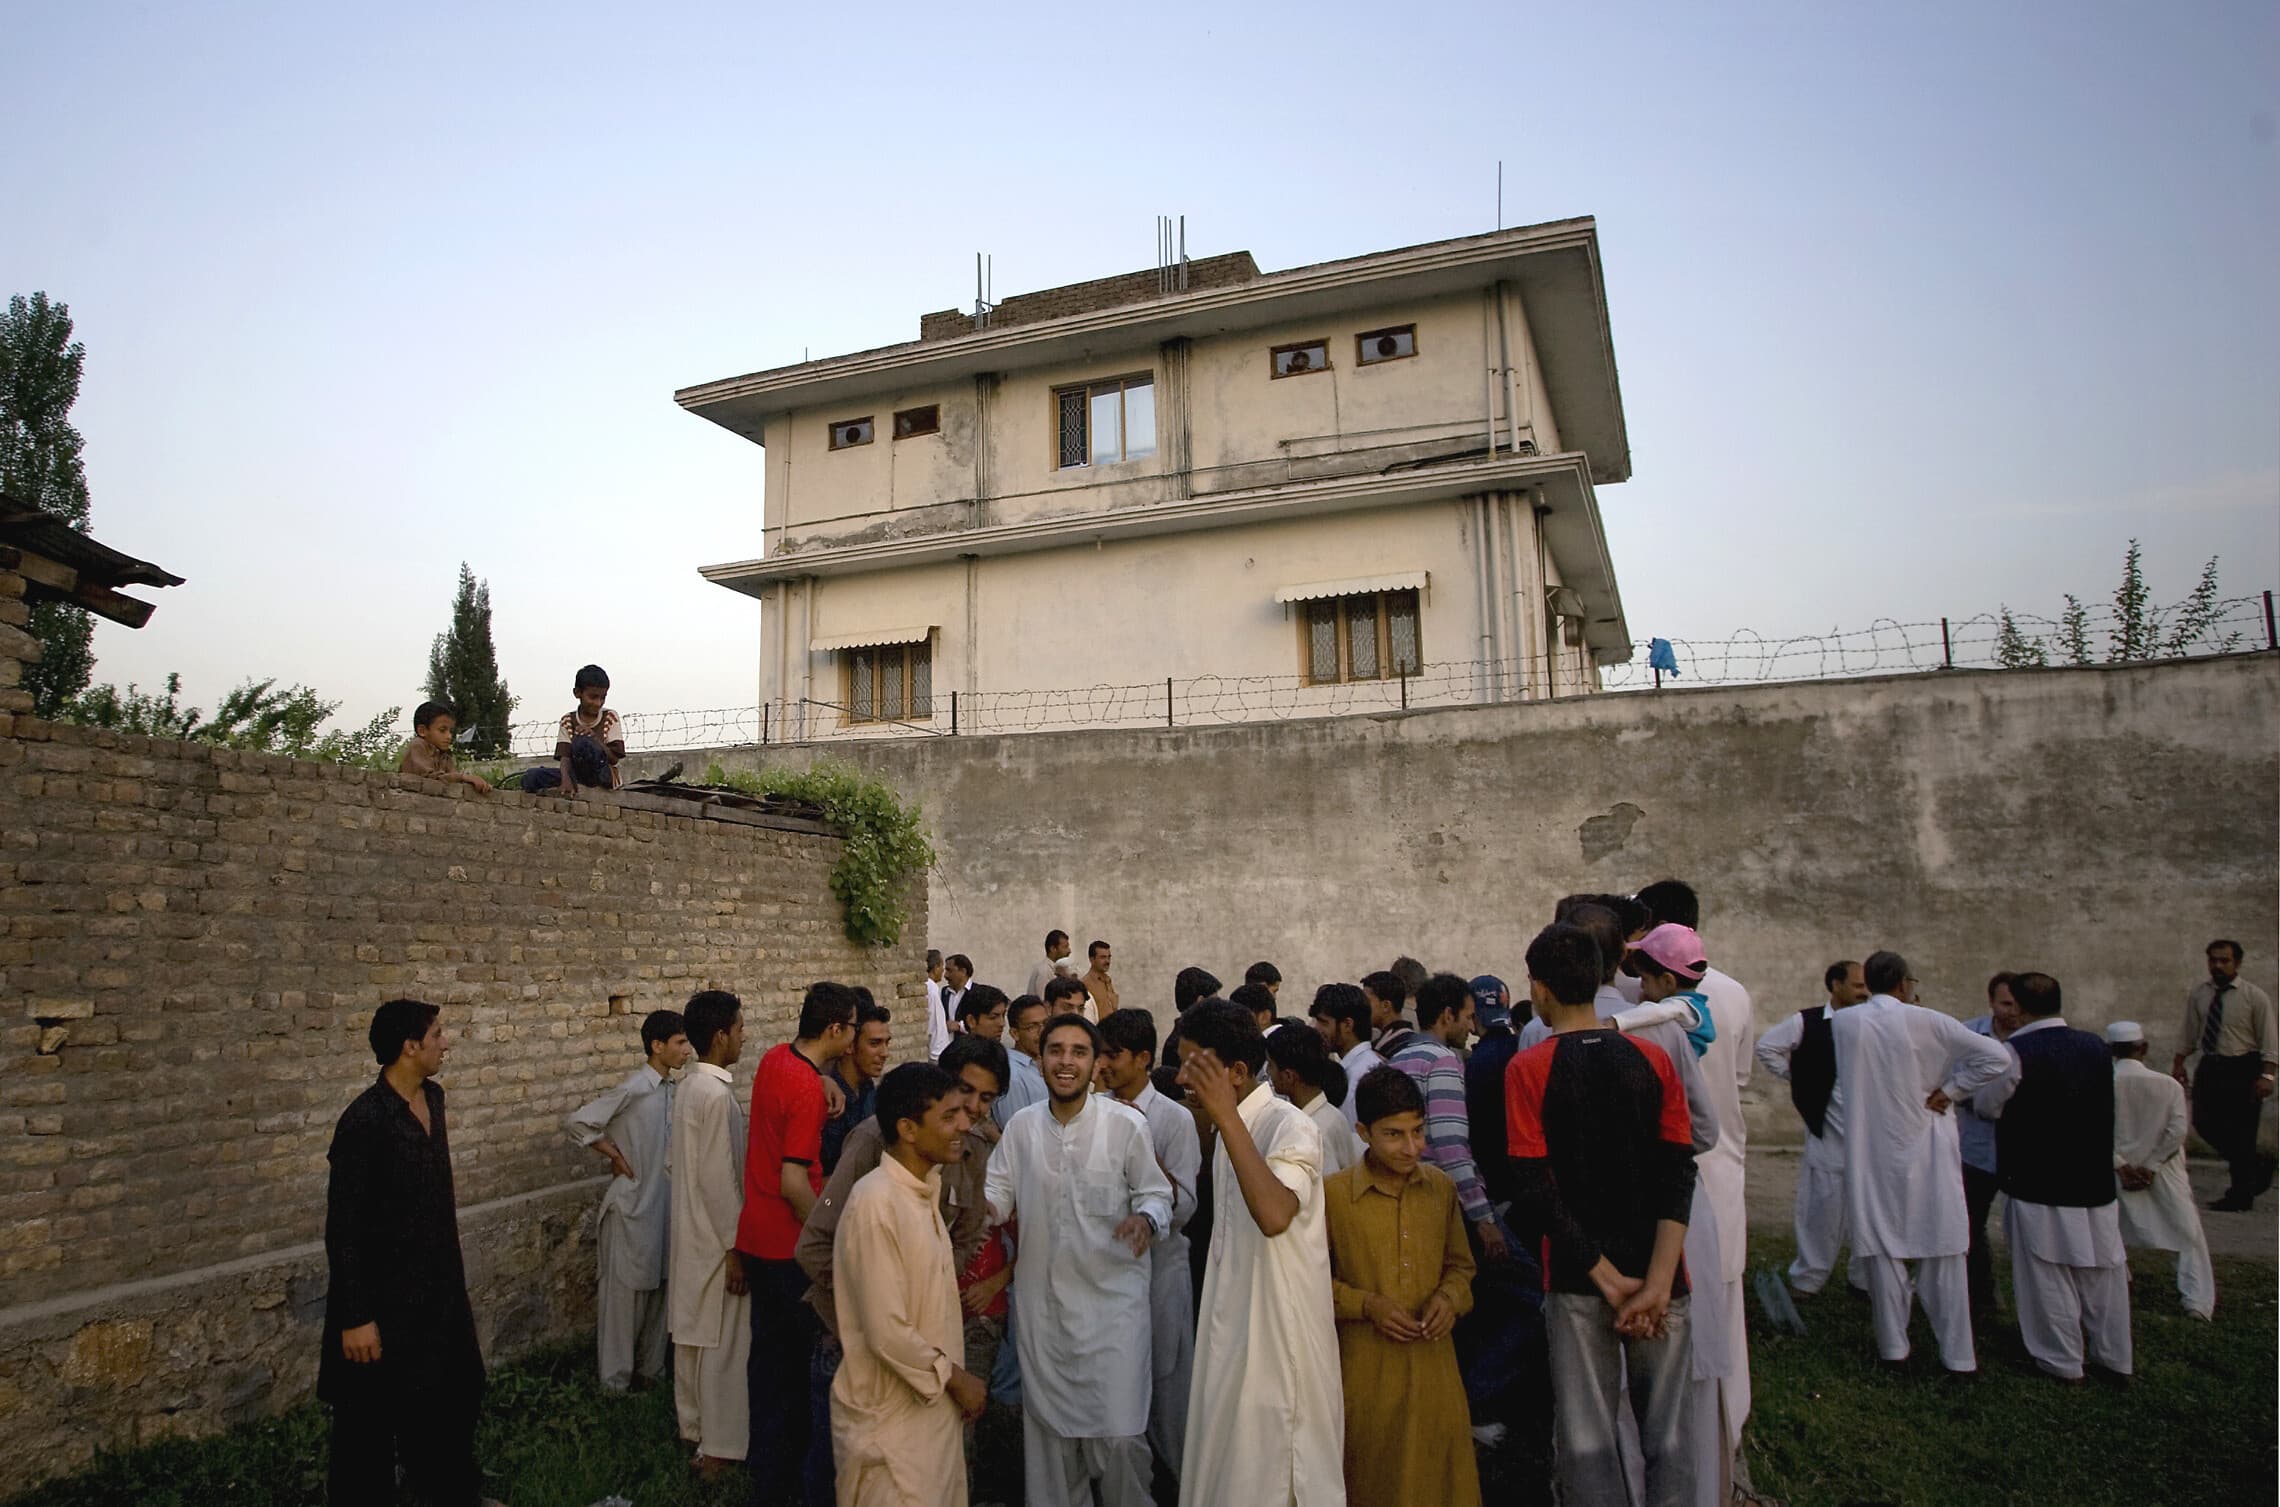 תושבים מקומיים מתכנסים מחוץ לבית שבו חוסל אוסמה בן לאדן באבוטאבאד, פקיסטן, 8 במאי 2013 (צילום: AP Photo/B.K. Bangash)